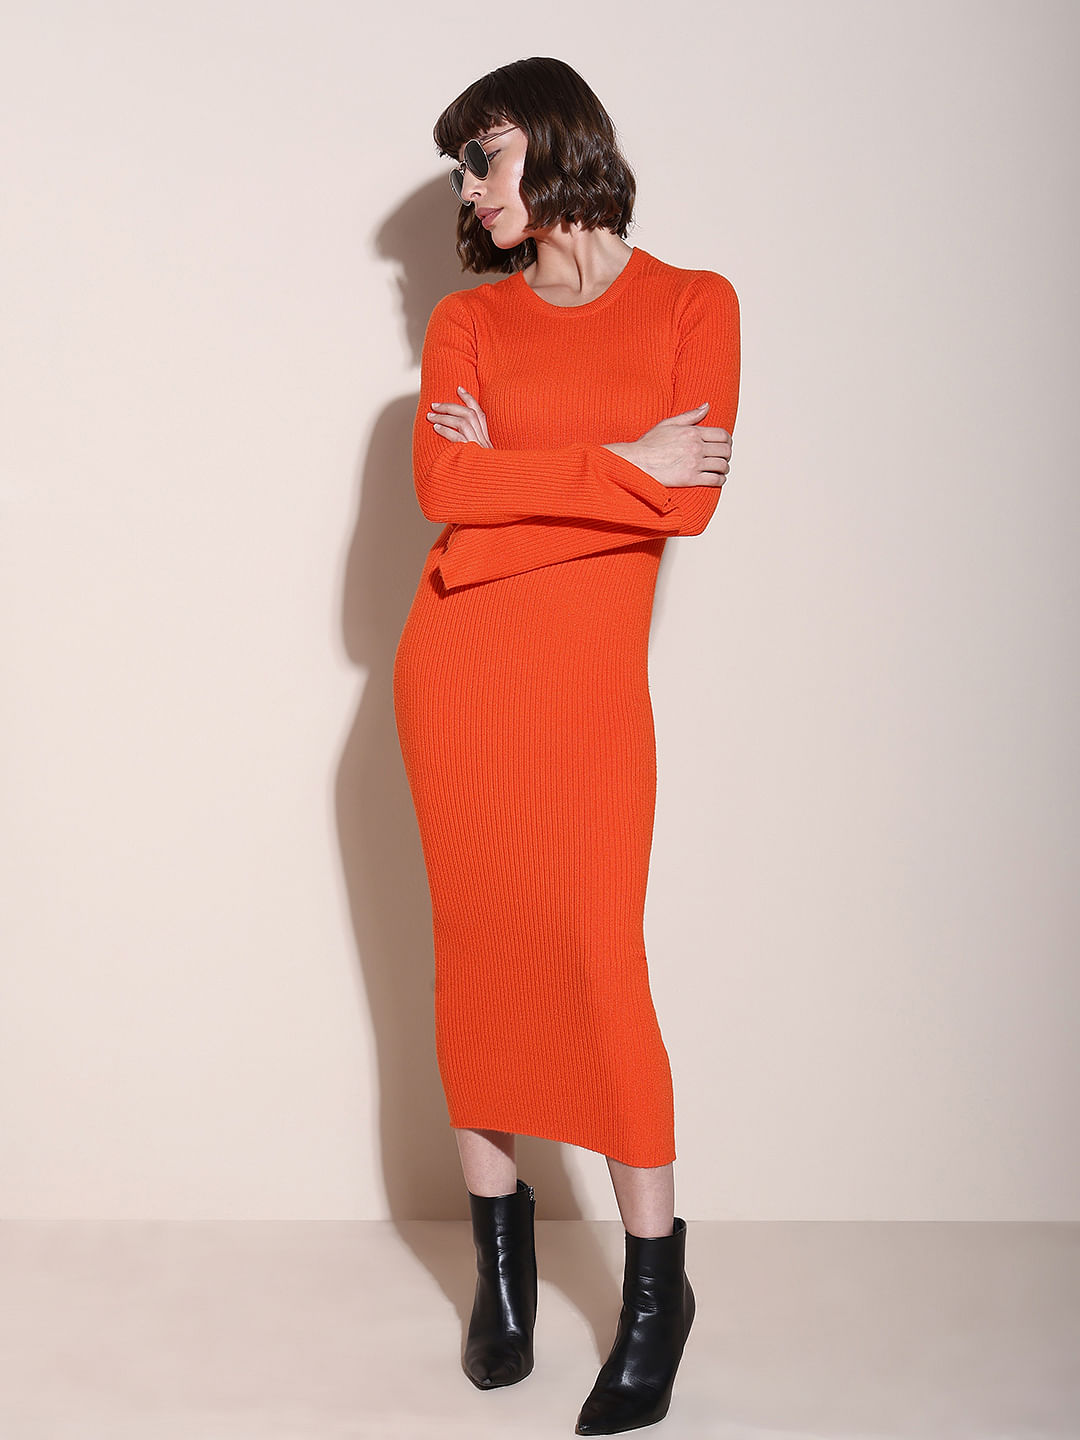 Buy Women Orange One Shoulder Bodycon Dress Online at Sassafras